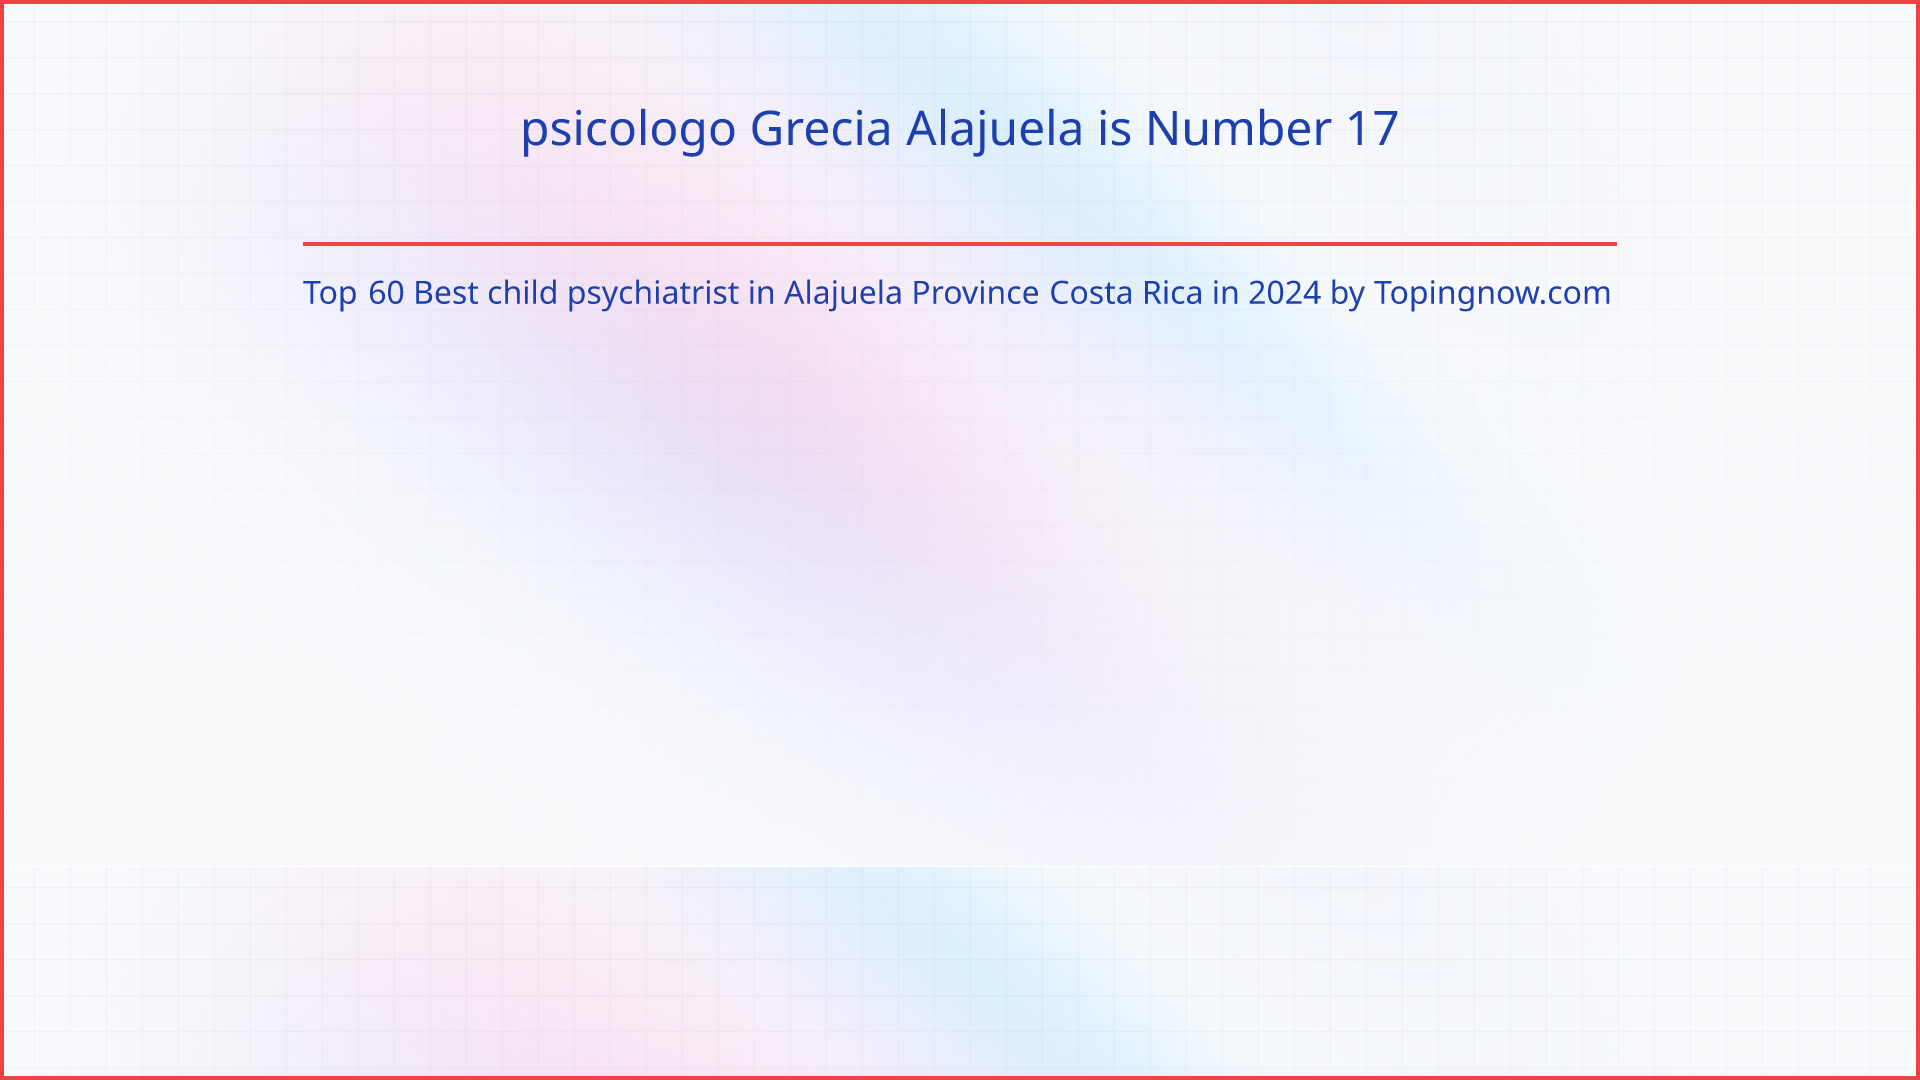 psicologo Grecia Alajuela: Top 60 Best child psychiatrist in Alajuela Province Costa Rica in 2024